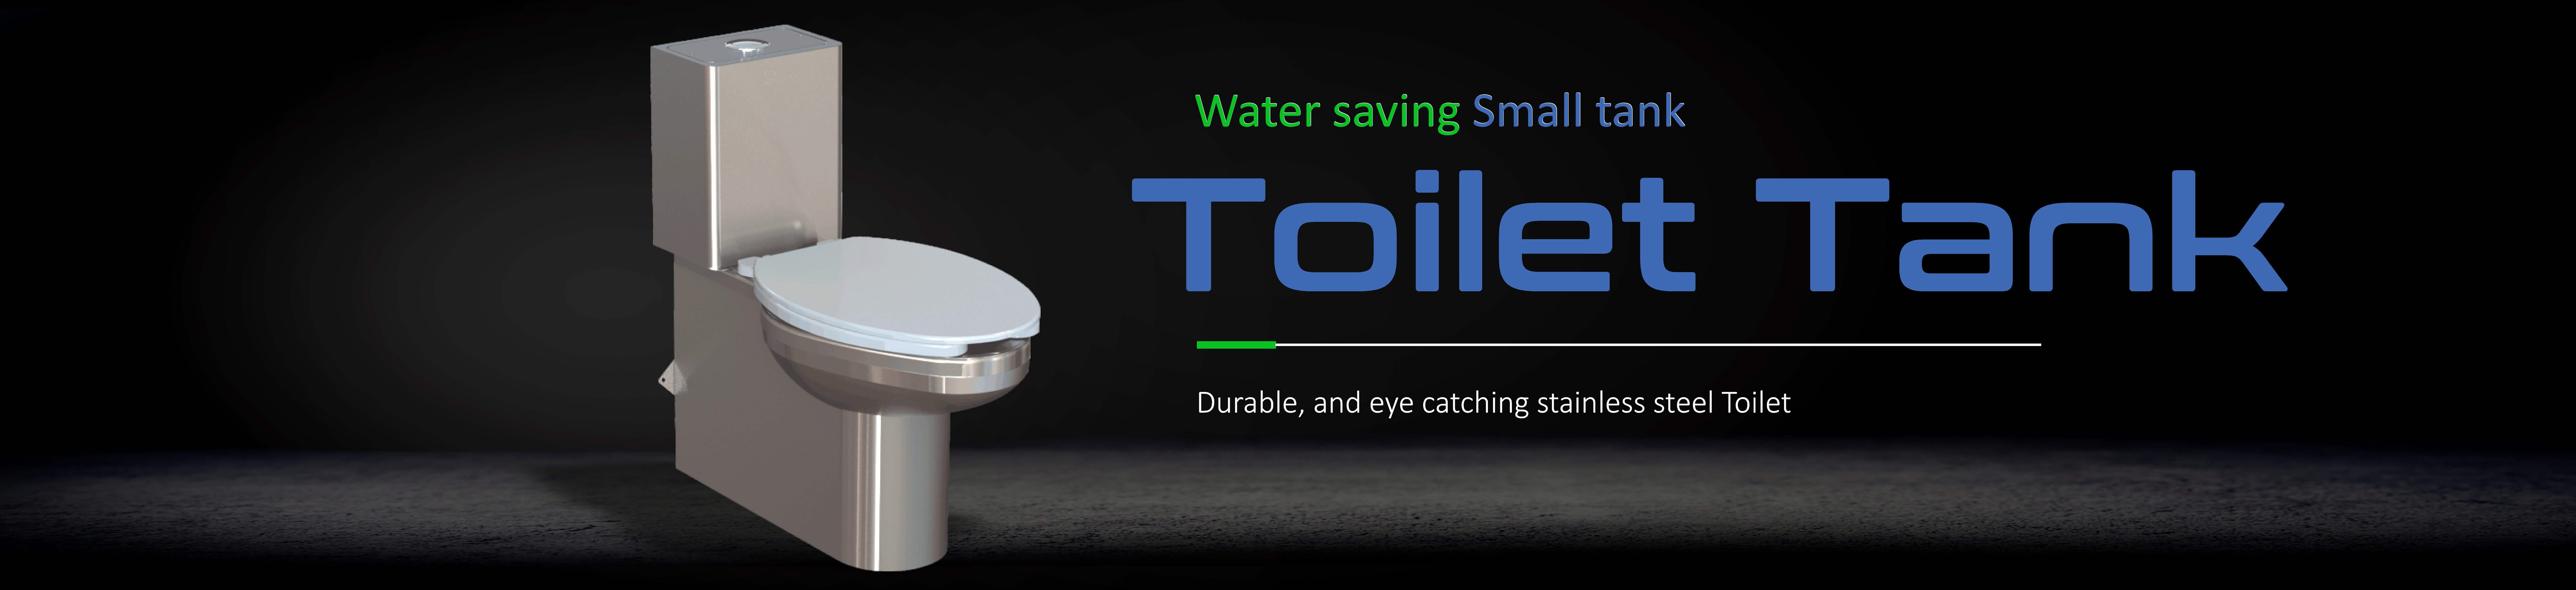 Stainless Steel Toiletk, water saving toilet